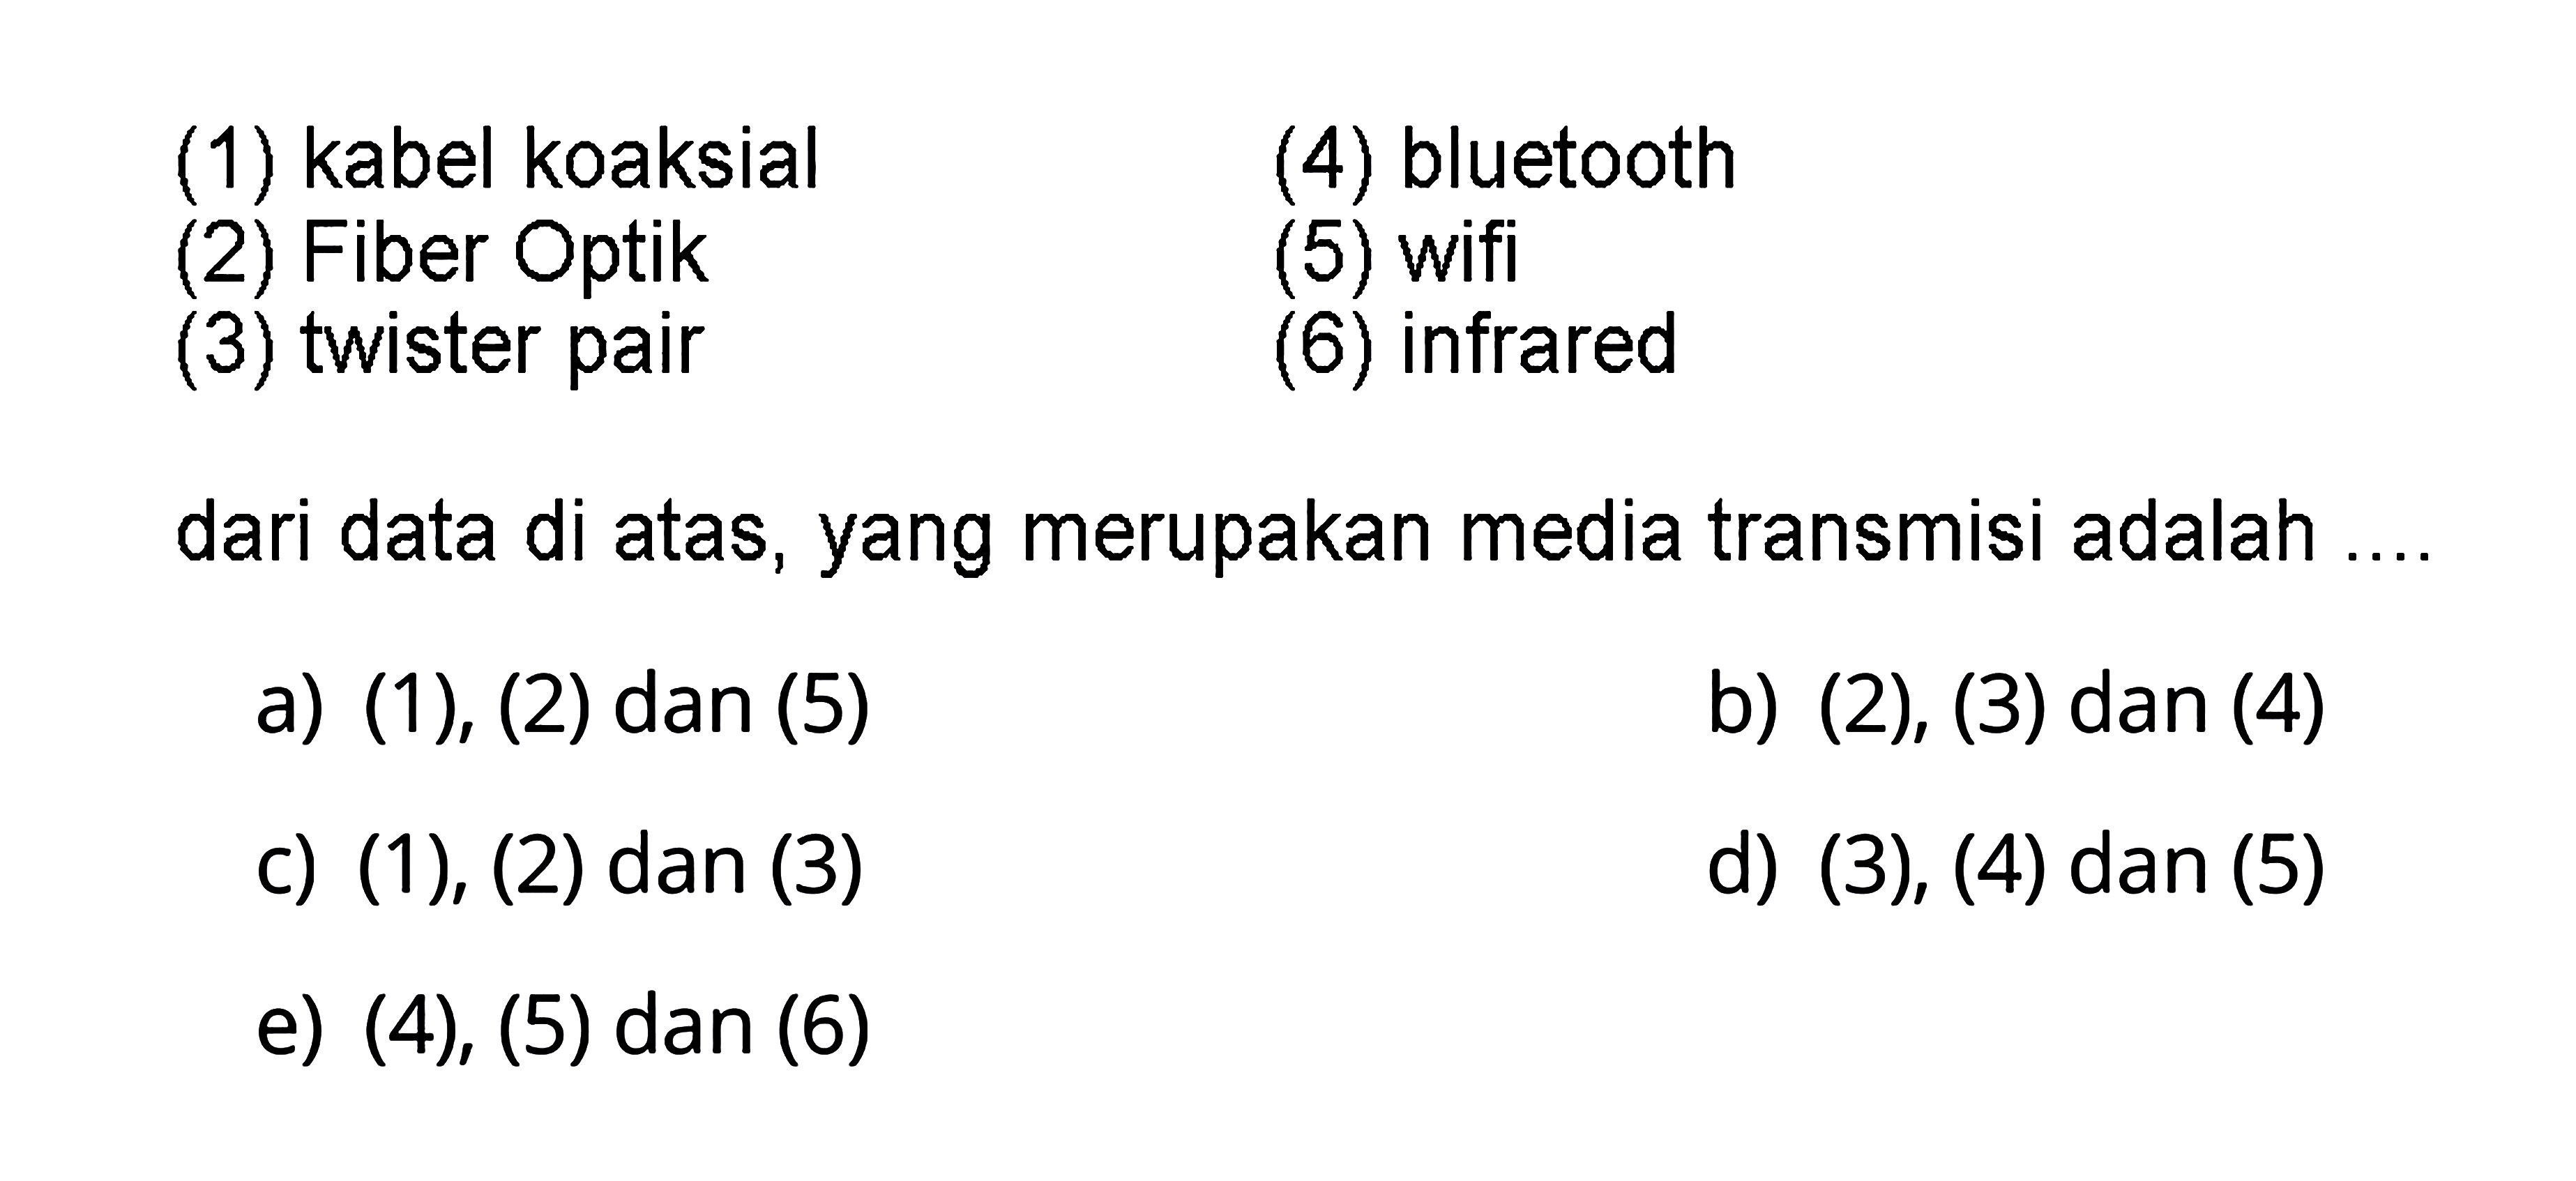 (1) kabel koaksial
(2) Fiber Optik
(3) twister pair
(4) bluetooth
(5) wifi
(6) infrared
dari data di atas, yang merupakan media transmisi adalah....